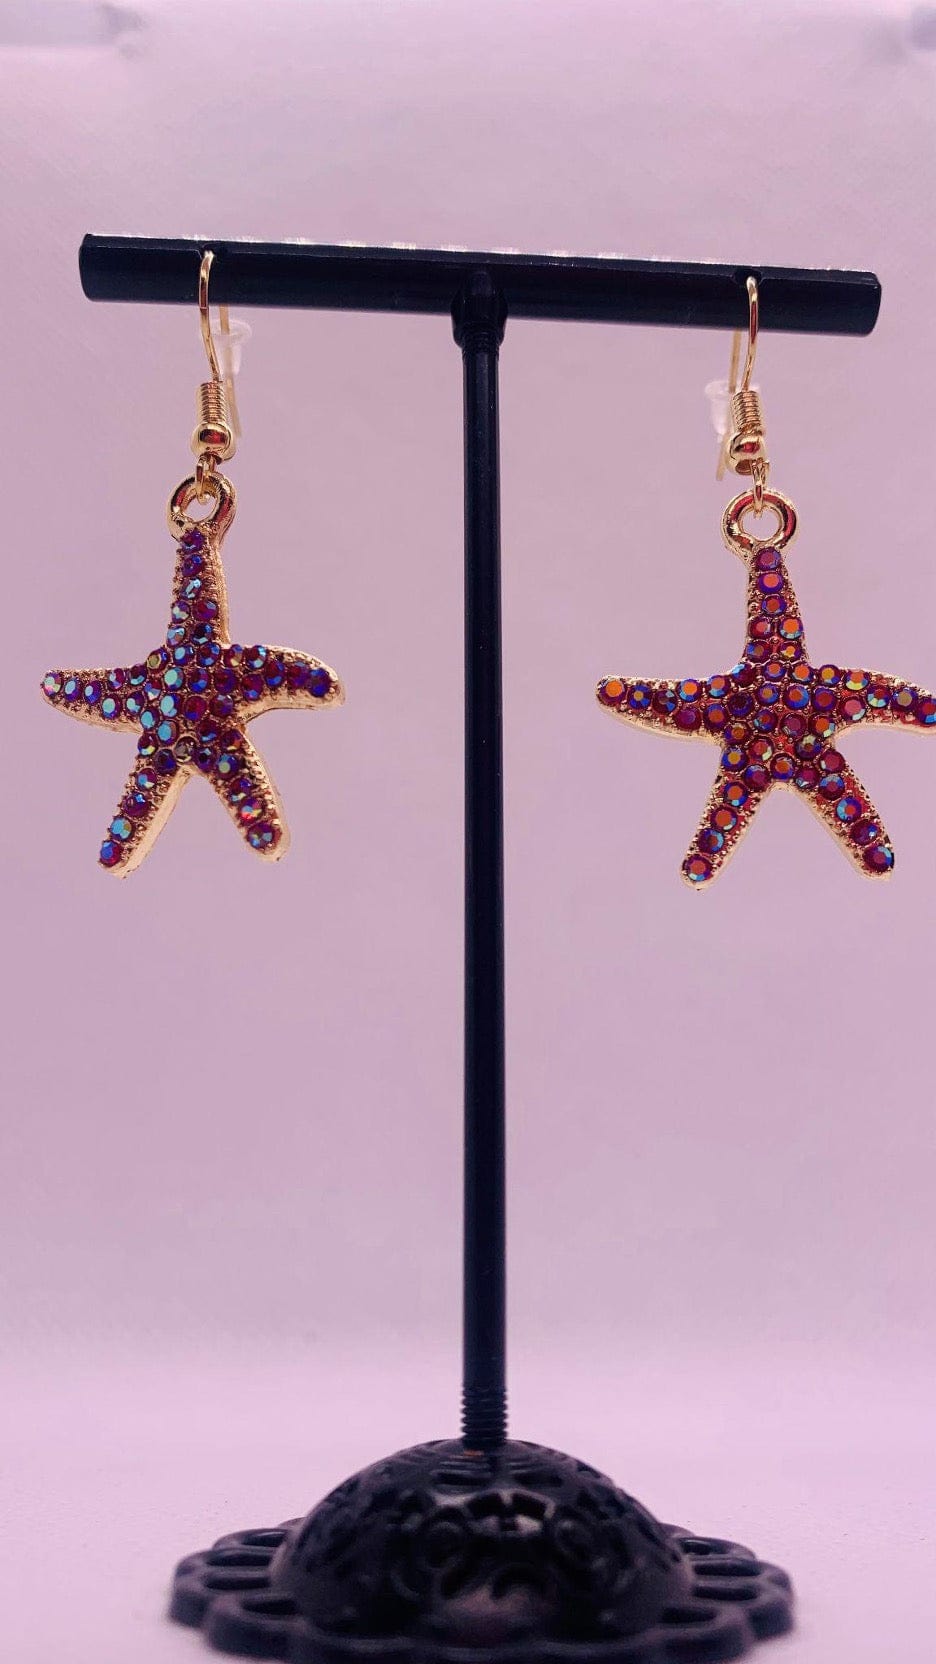 Starfish Dangle Earrings - Cowtown Bling N Things